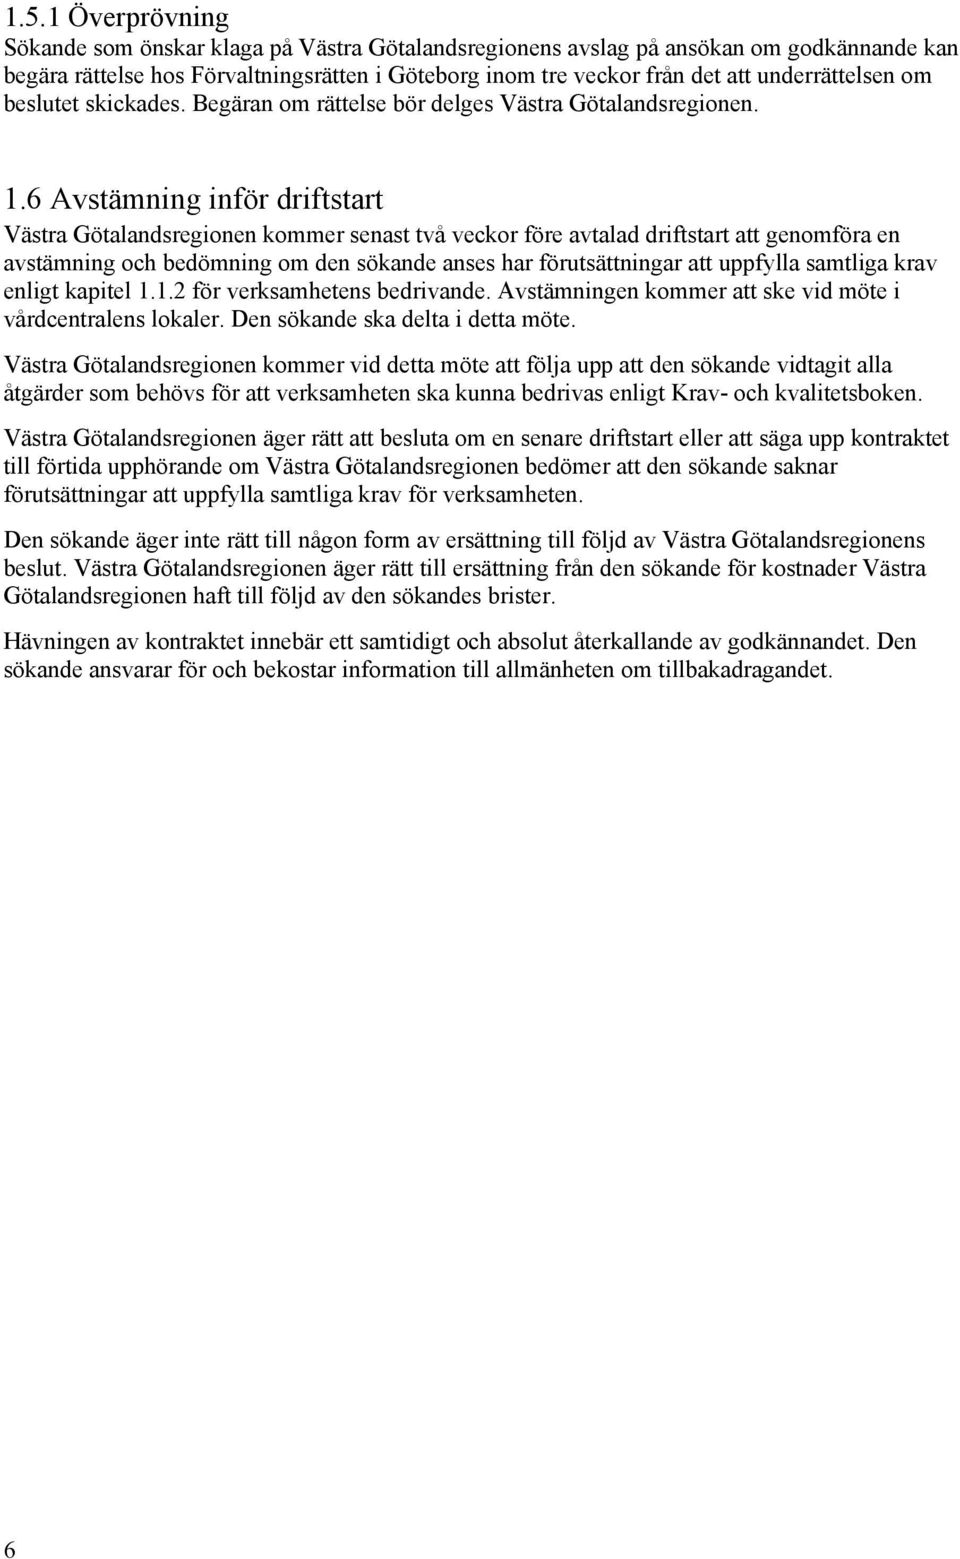 6 Avstämning inför driftstart Västra Götalandsregionen kommer senast två veckor före avtalad driftstart att genomföra en avstämning och bedömning om den sökande anses har förutsättningar att uppfylla